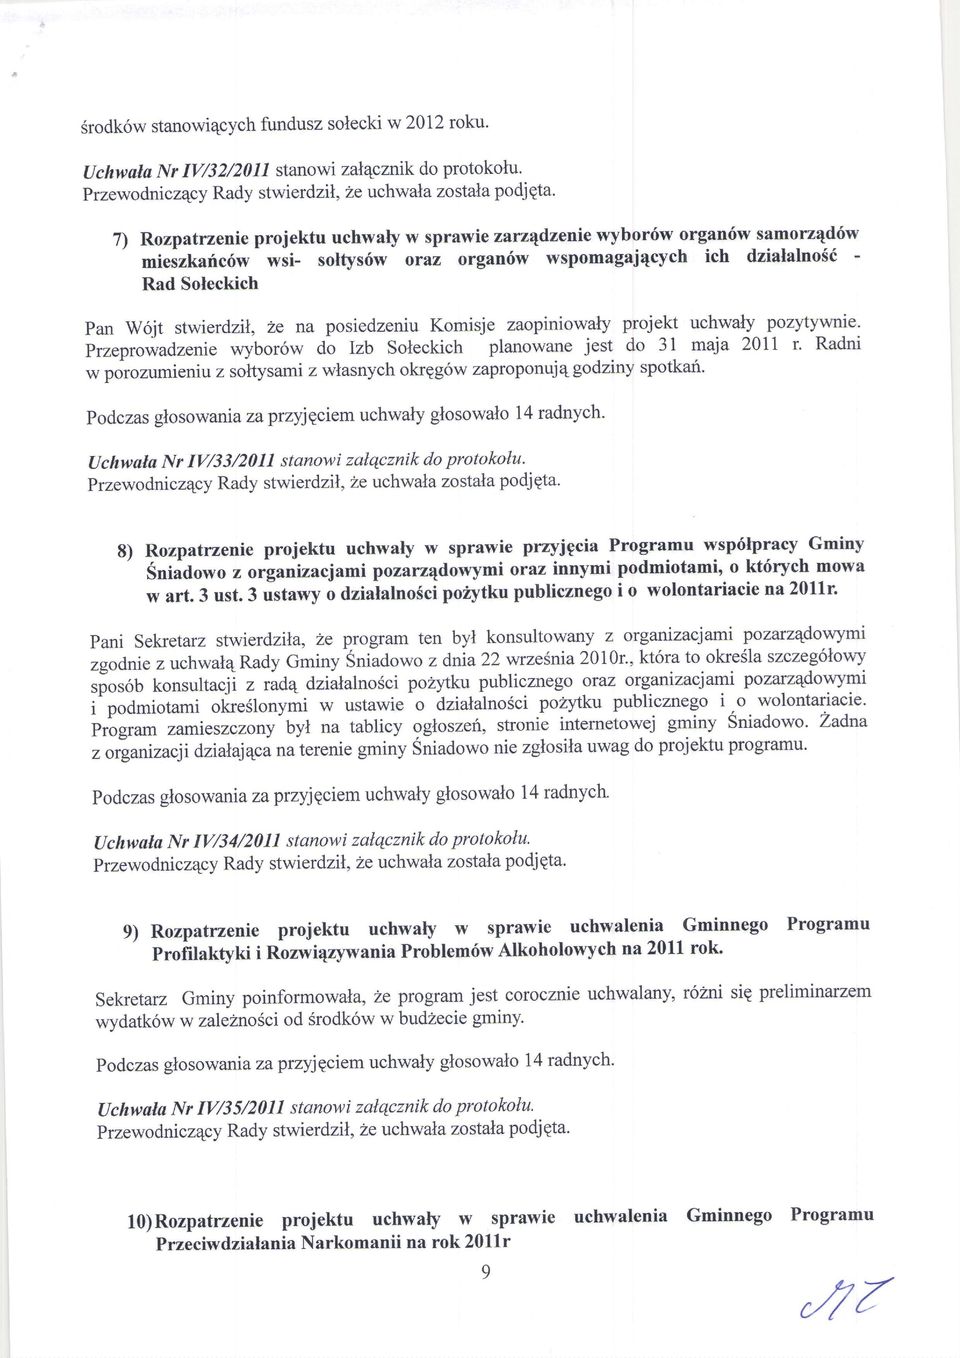 posiedzeniu Komisje zaopiniowaly projett uchwaly pozytywnie. Przeprowadzenie wybor6w do Izb Soleckich planowane jest do 31 maja 2011 r.